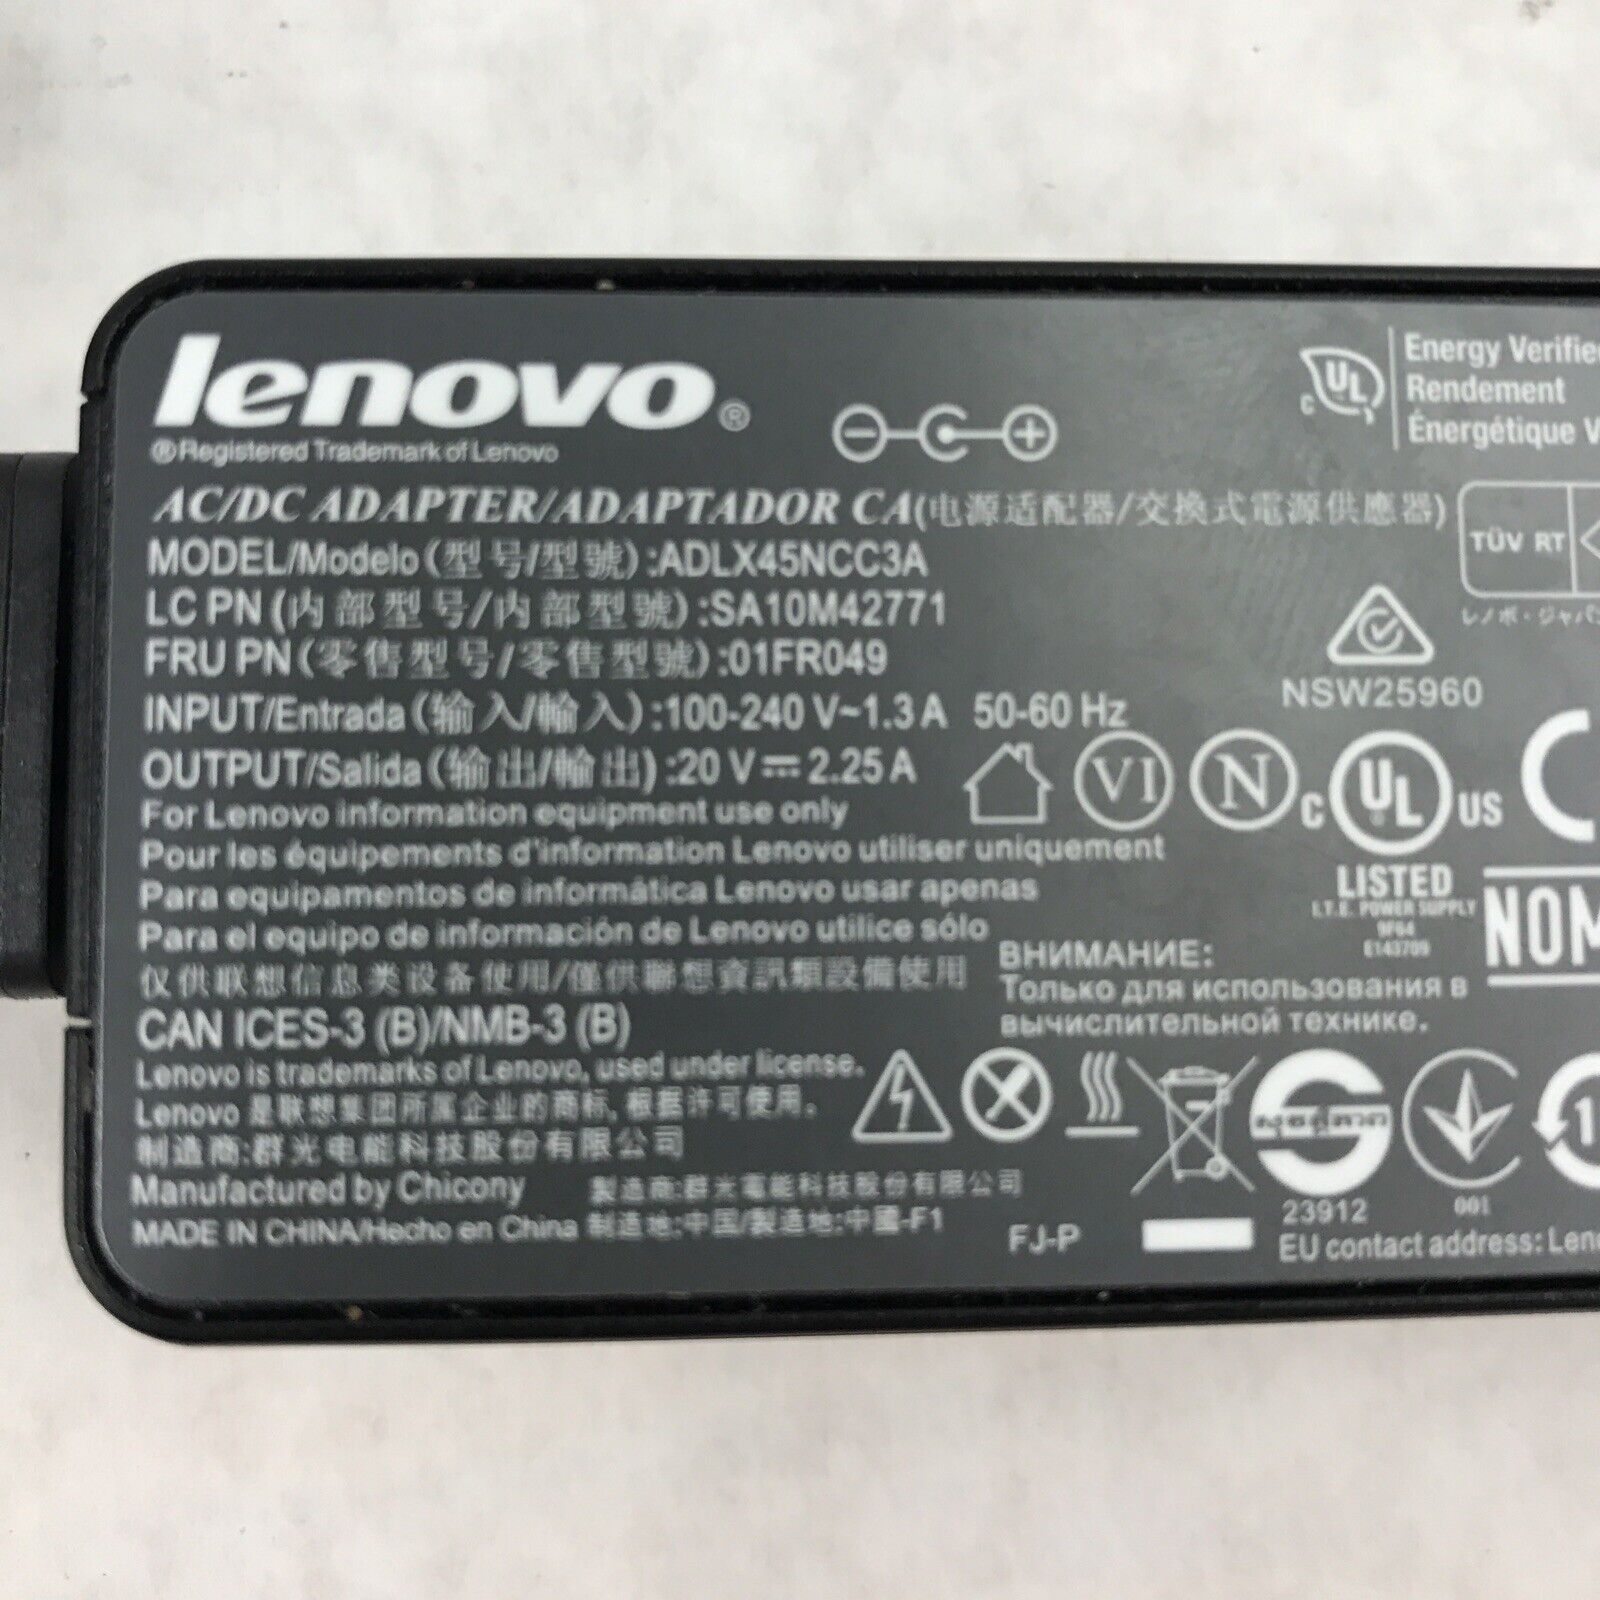 Lenovo ADLX45NCC3A 20V 2.25A 60Hz 01FR049 AC/DC Adapter SA10M42771